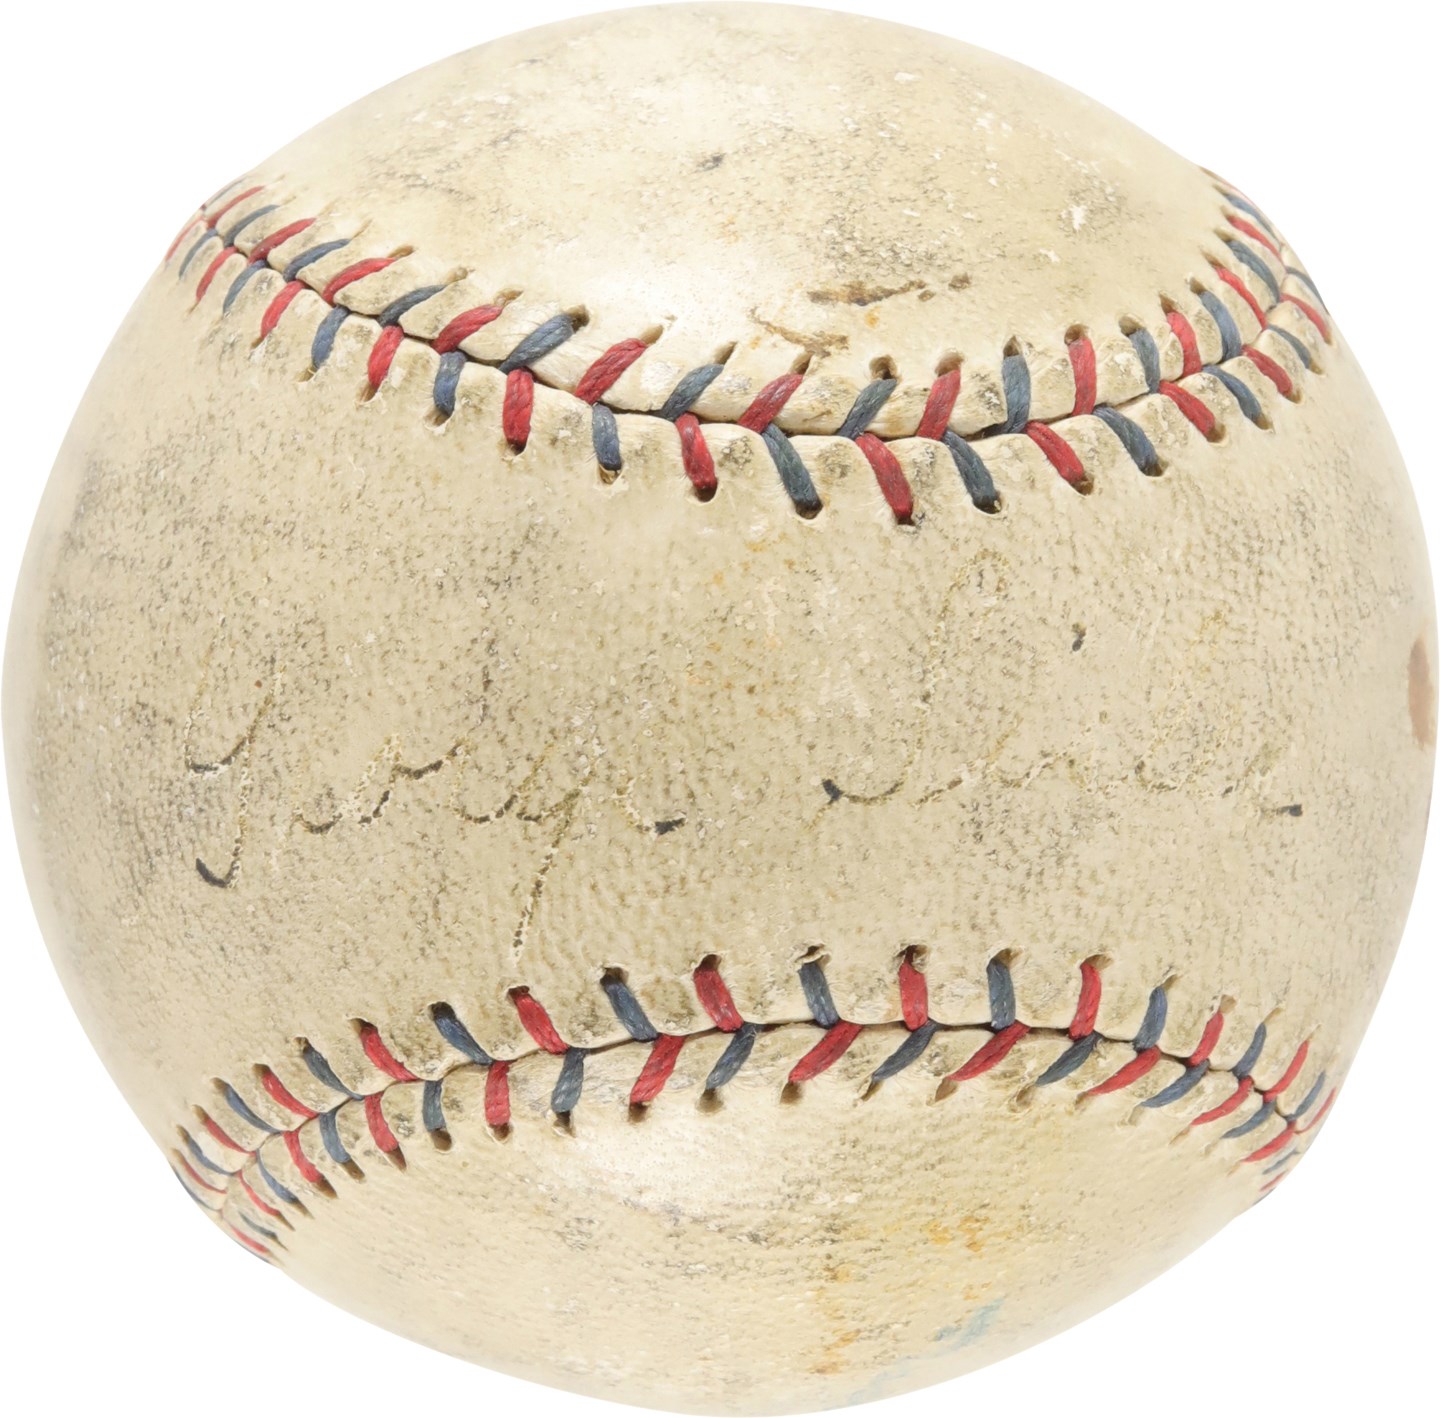 Baseball Autographs - 1925 George Sisler Single-Signed Ban Johnson Baseball - Playing Days Signature (PSA)